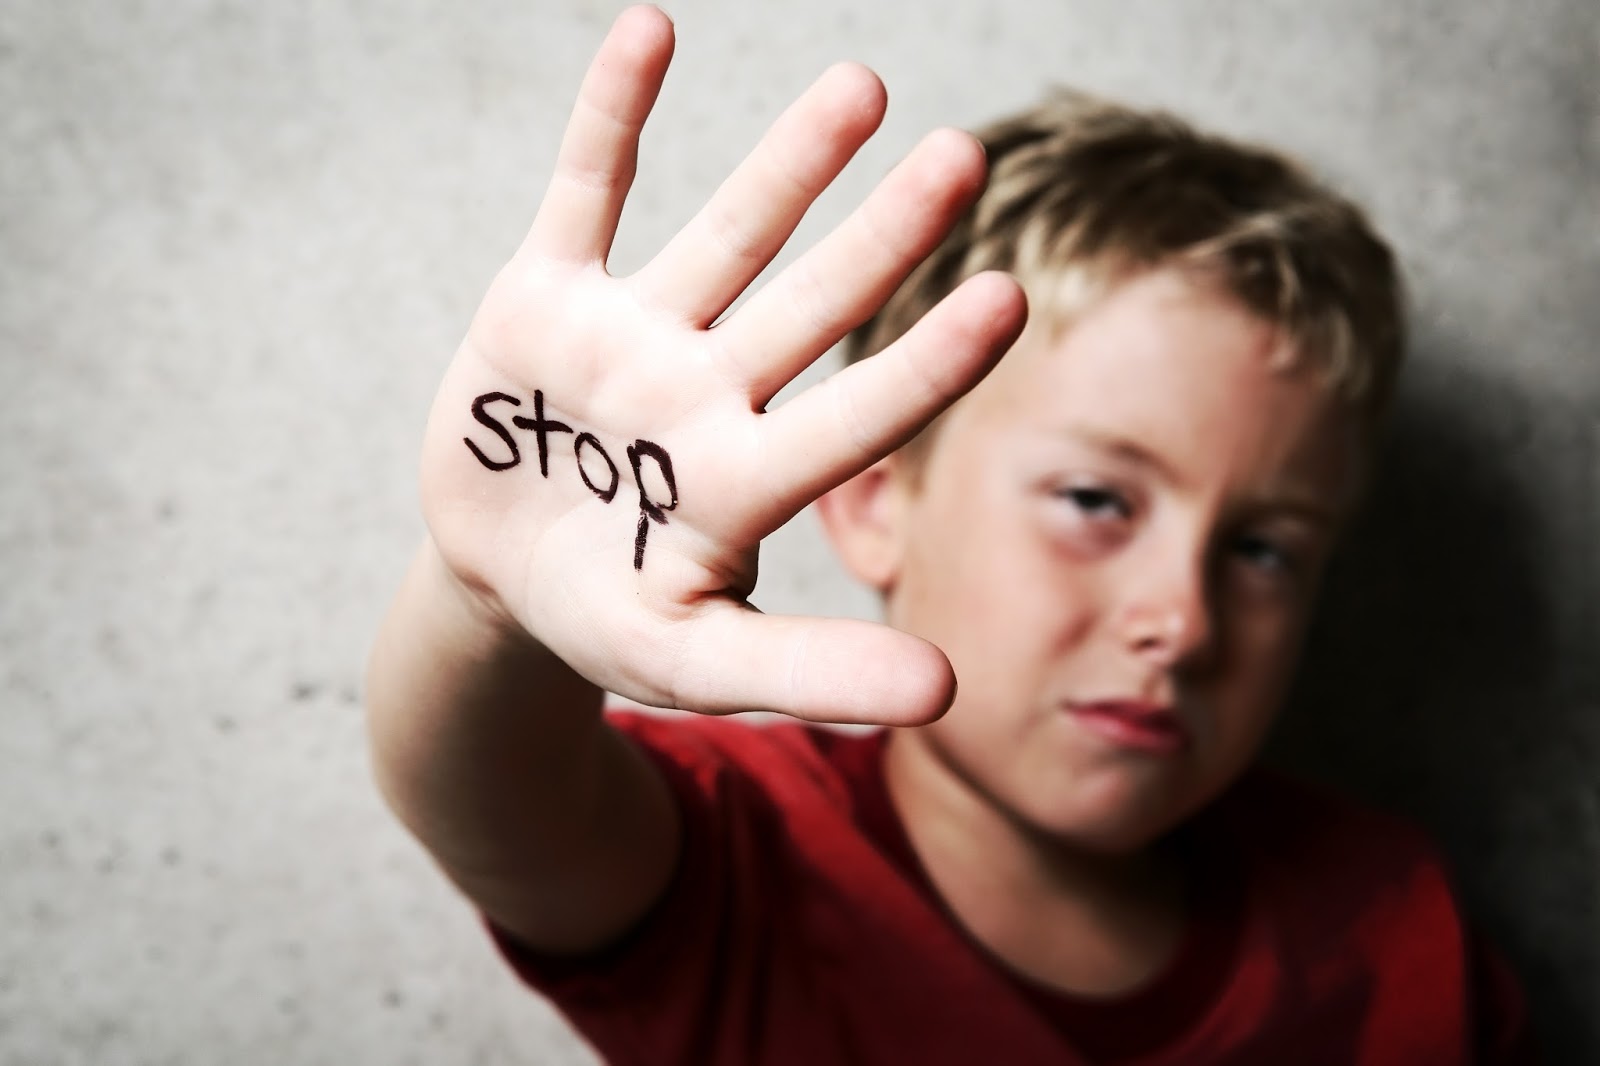 علامات تدل لتعرض الطفل للتحرش وتعليمه كيفية الدفاع عن نفسه